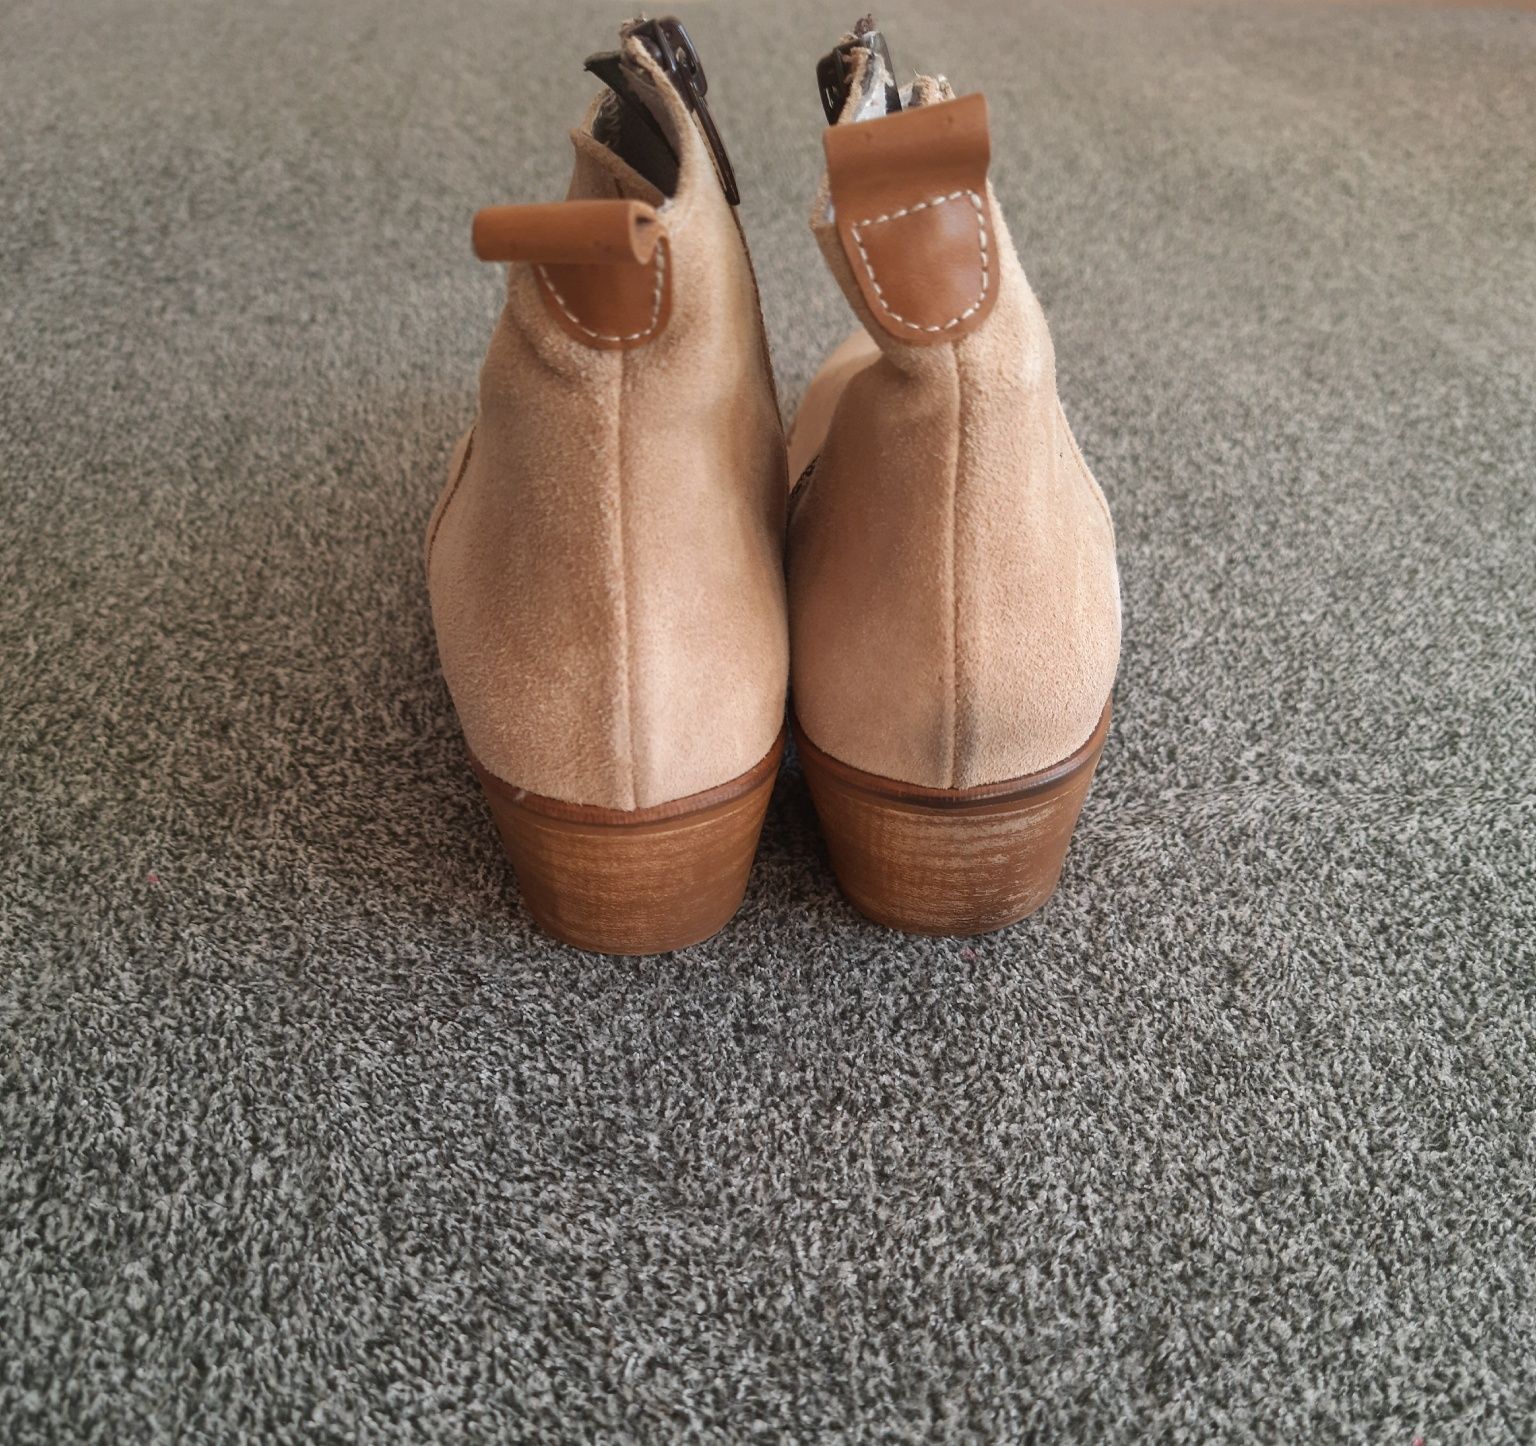 Ботинки/Полуботинки Nature Dhoes. Испания. Размер - 38.